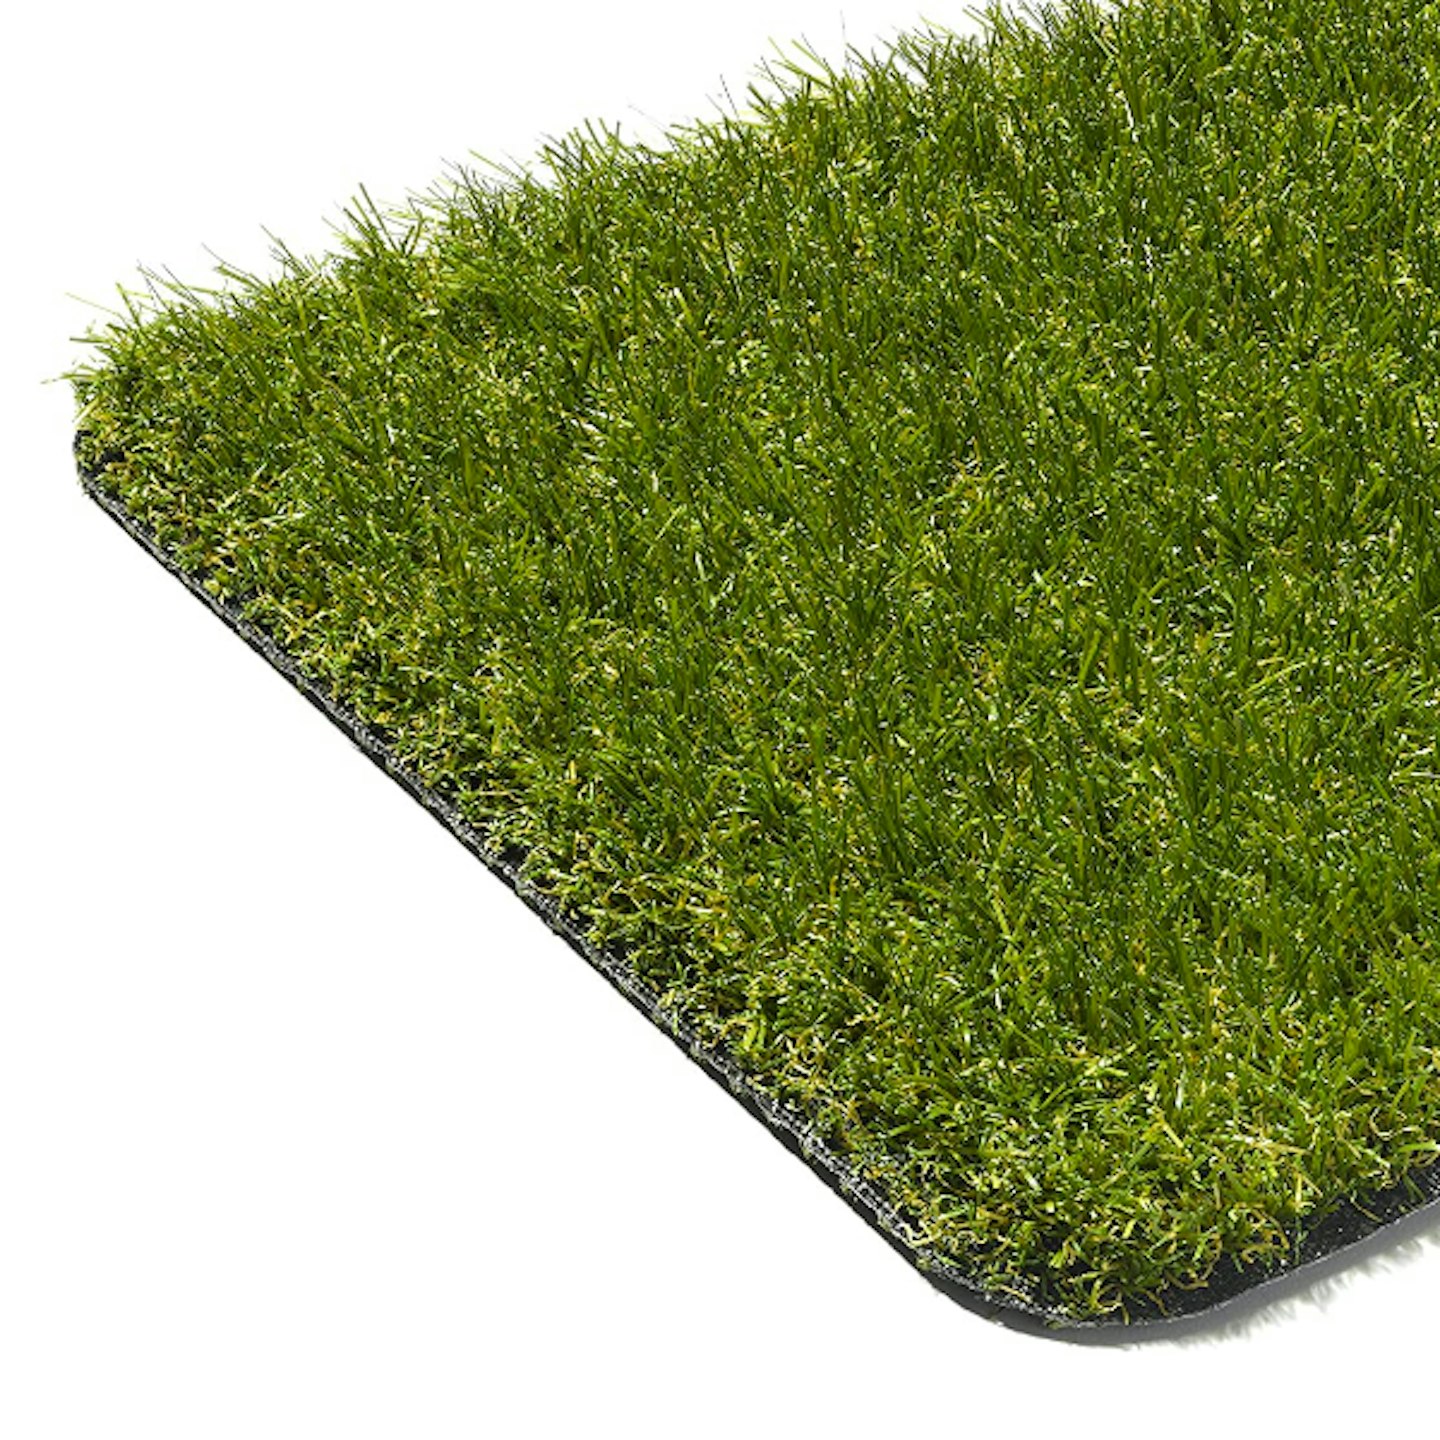 Quickgrass Luxury Artificial Grass